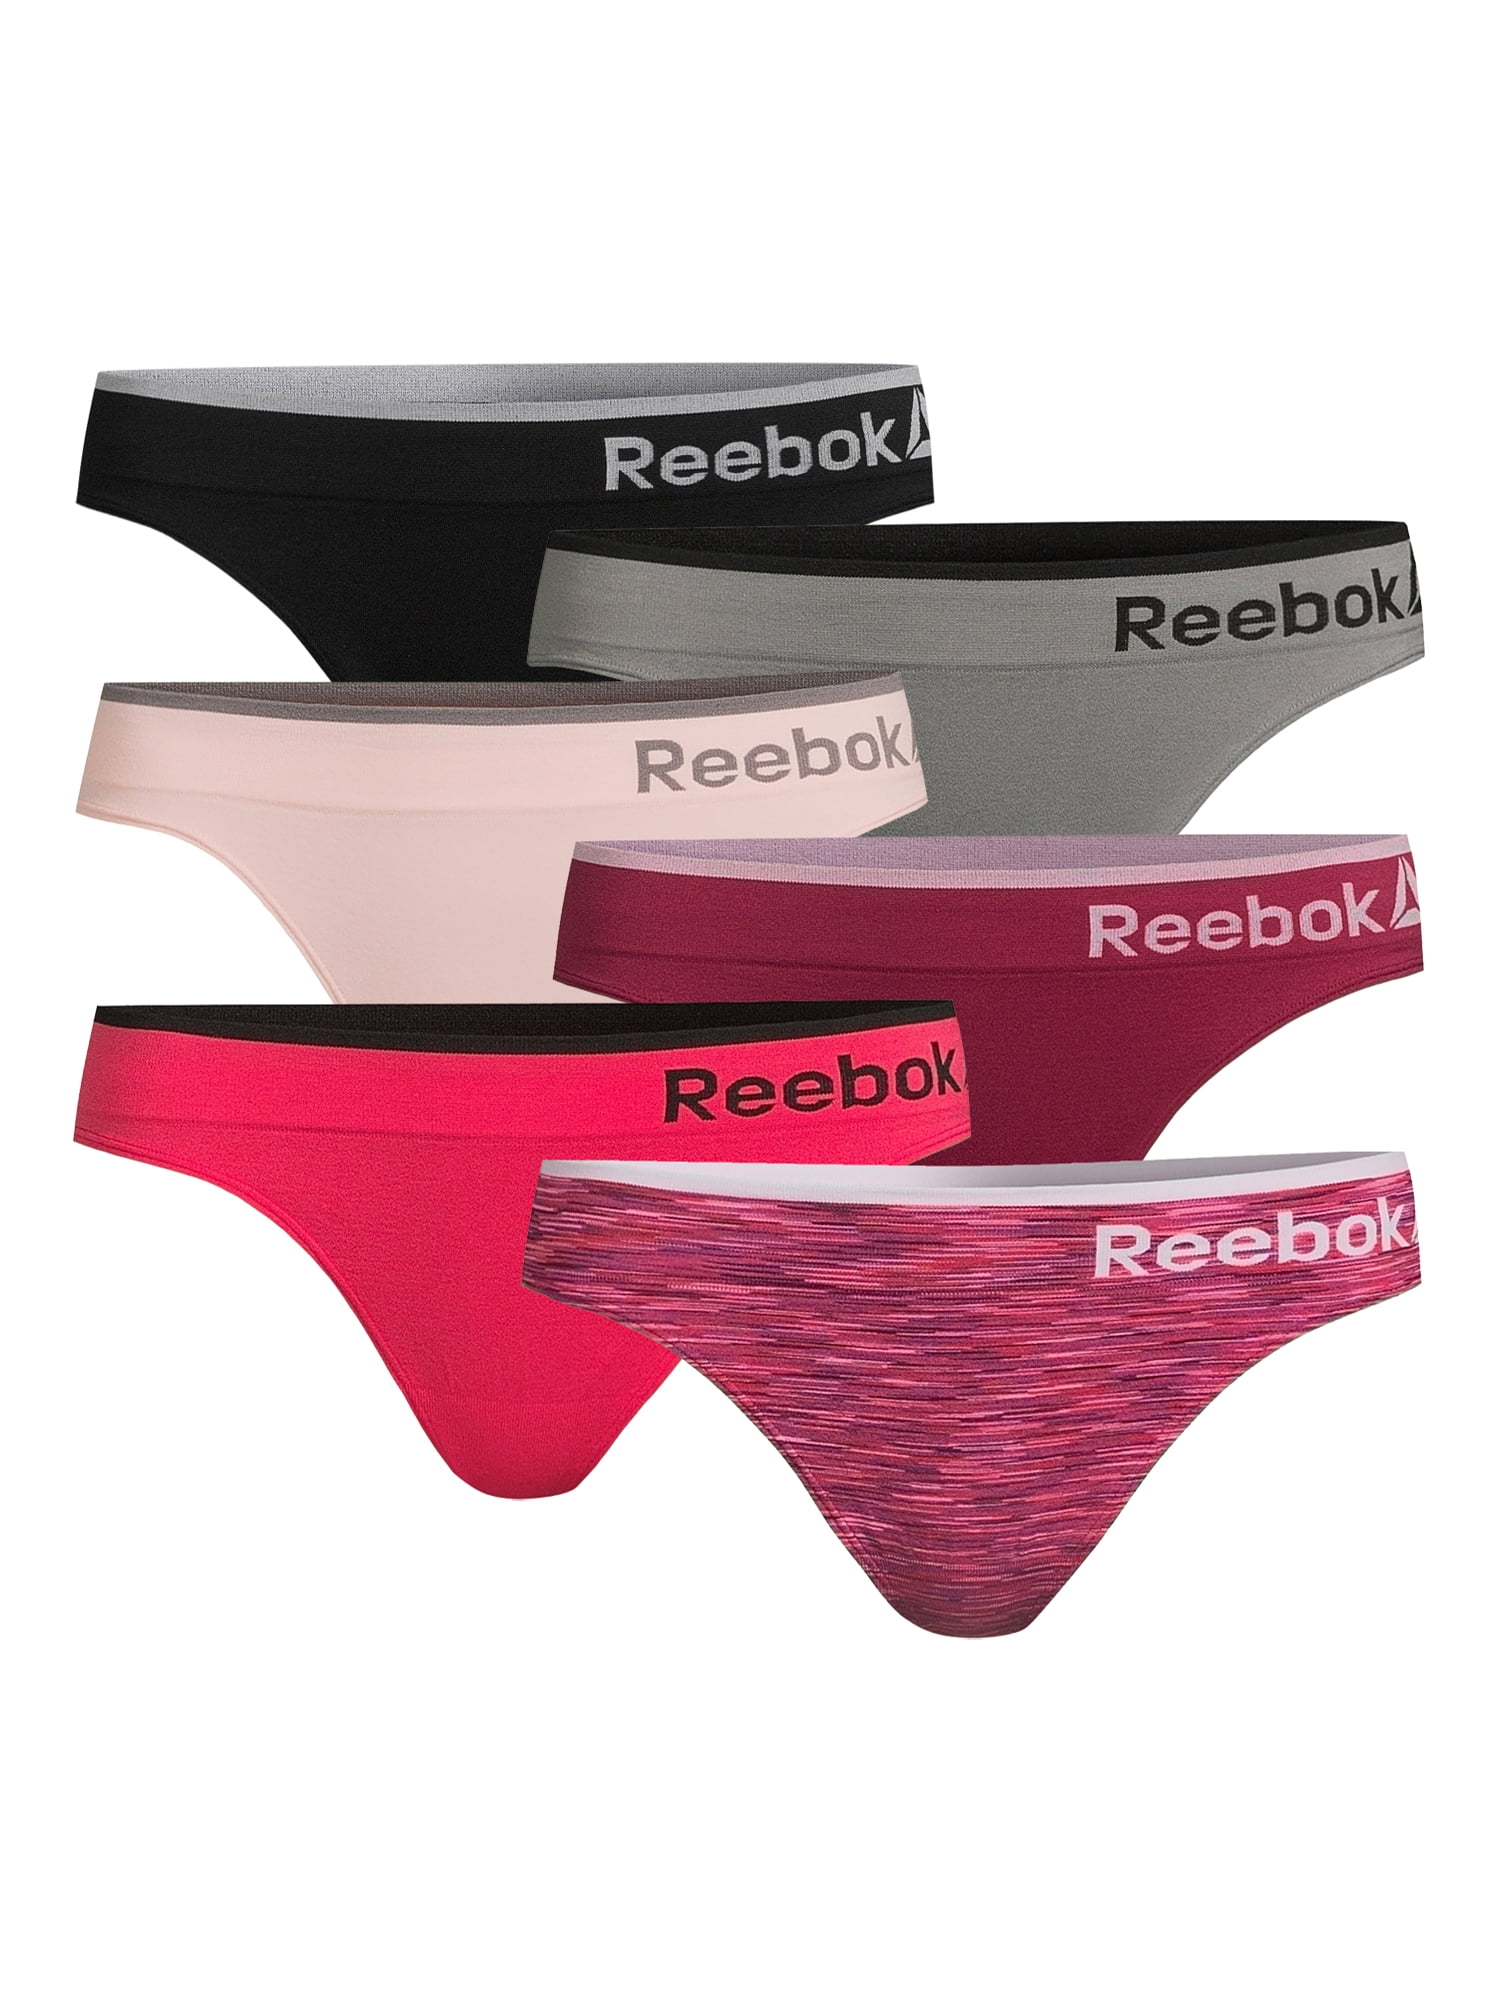 Reebok Women's Seamless Briefs,6-Pack, Sizes XS- 3XL